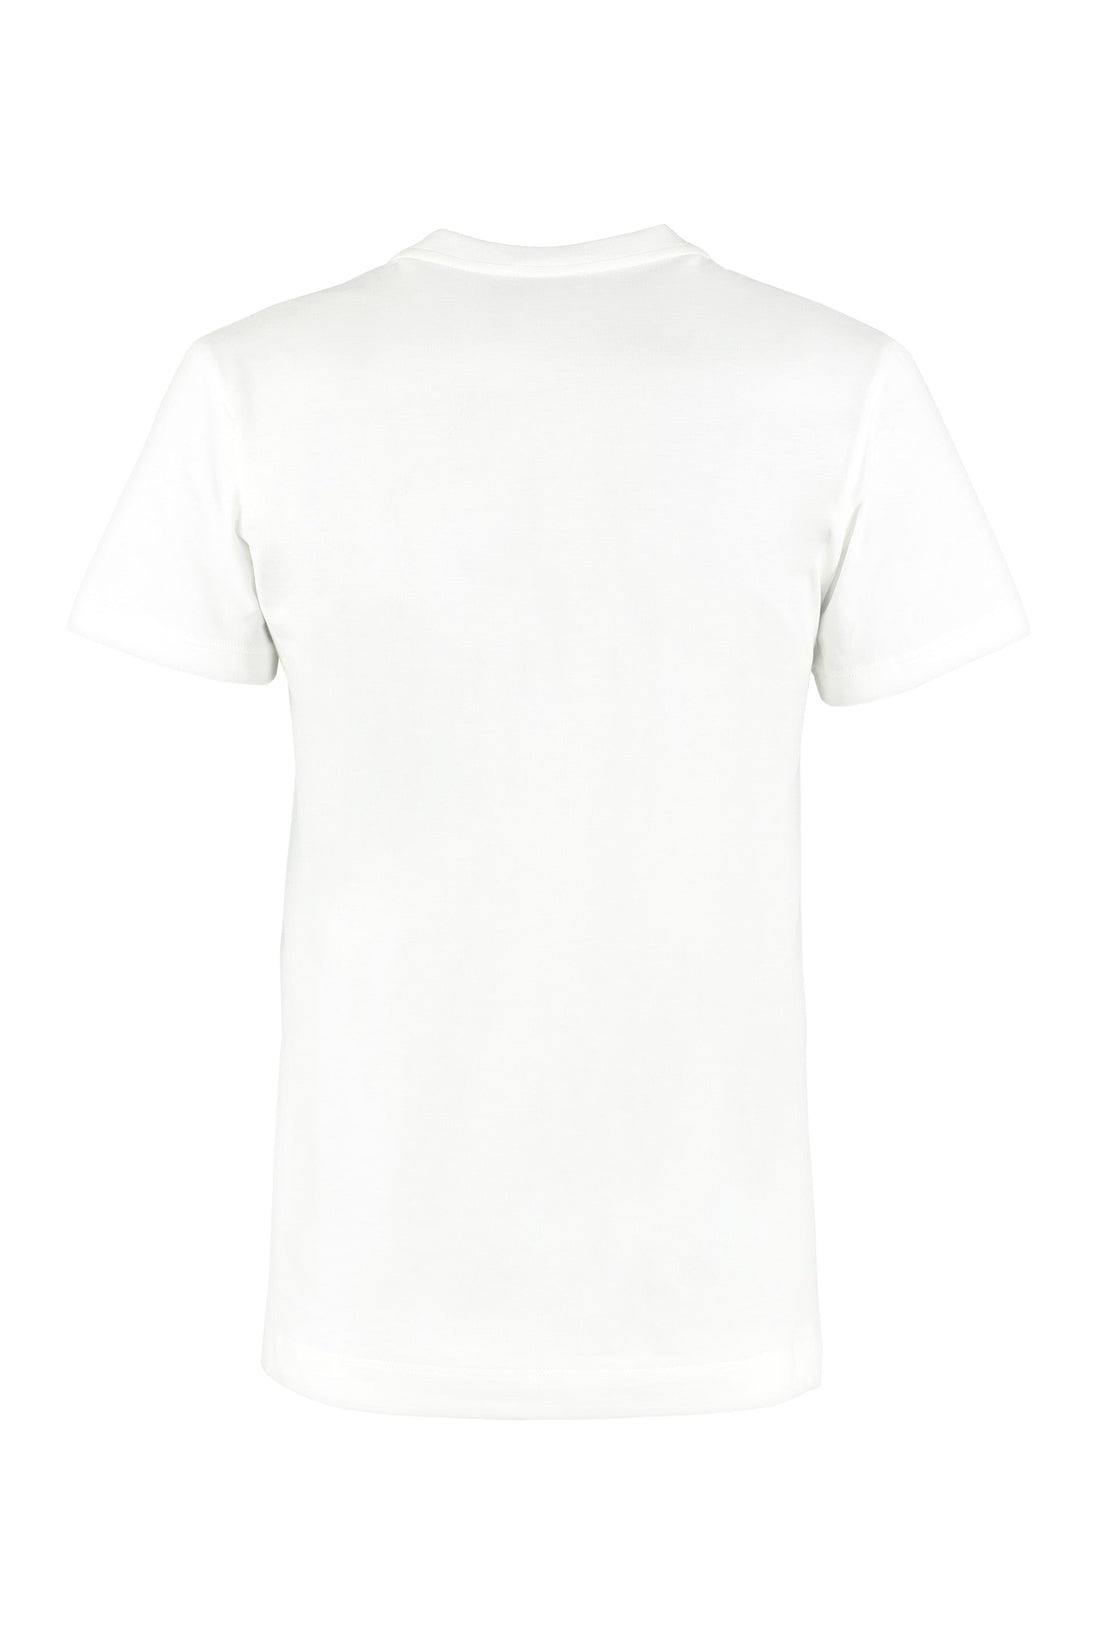 Moncler-OUTLET-SALE-Logo-patch cotton T-shirt-ARCHIVIST